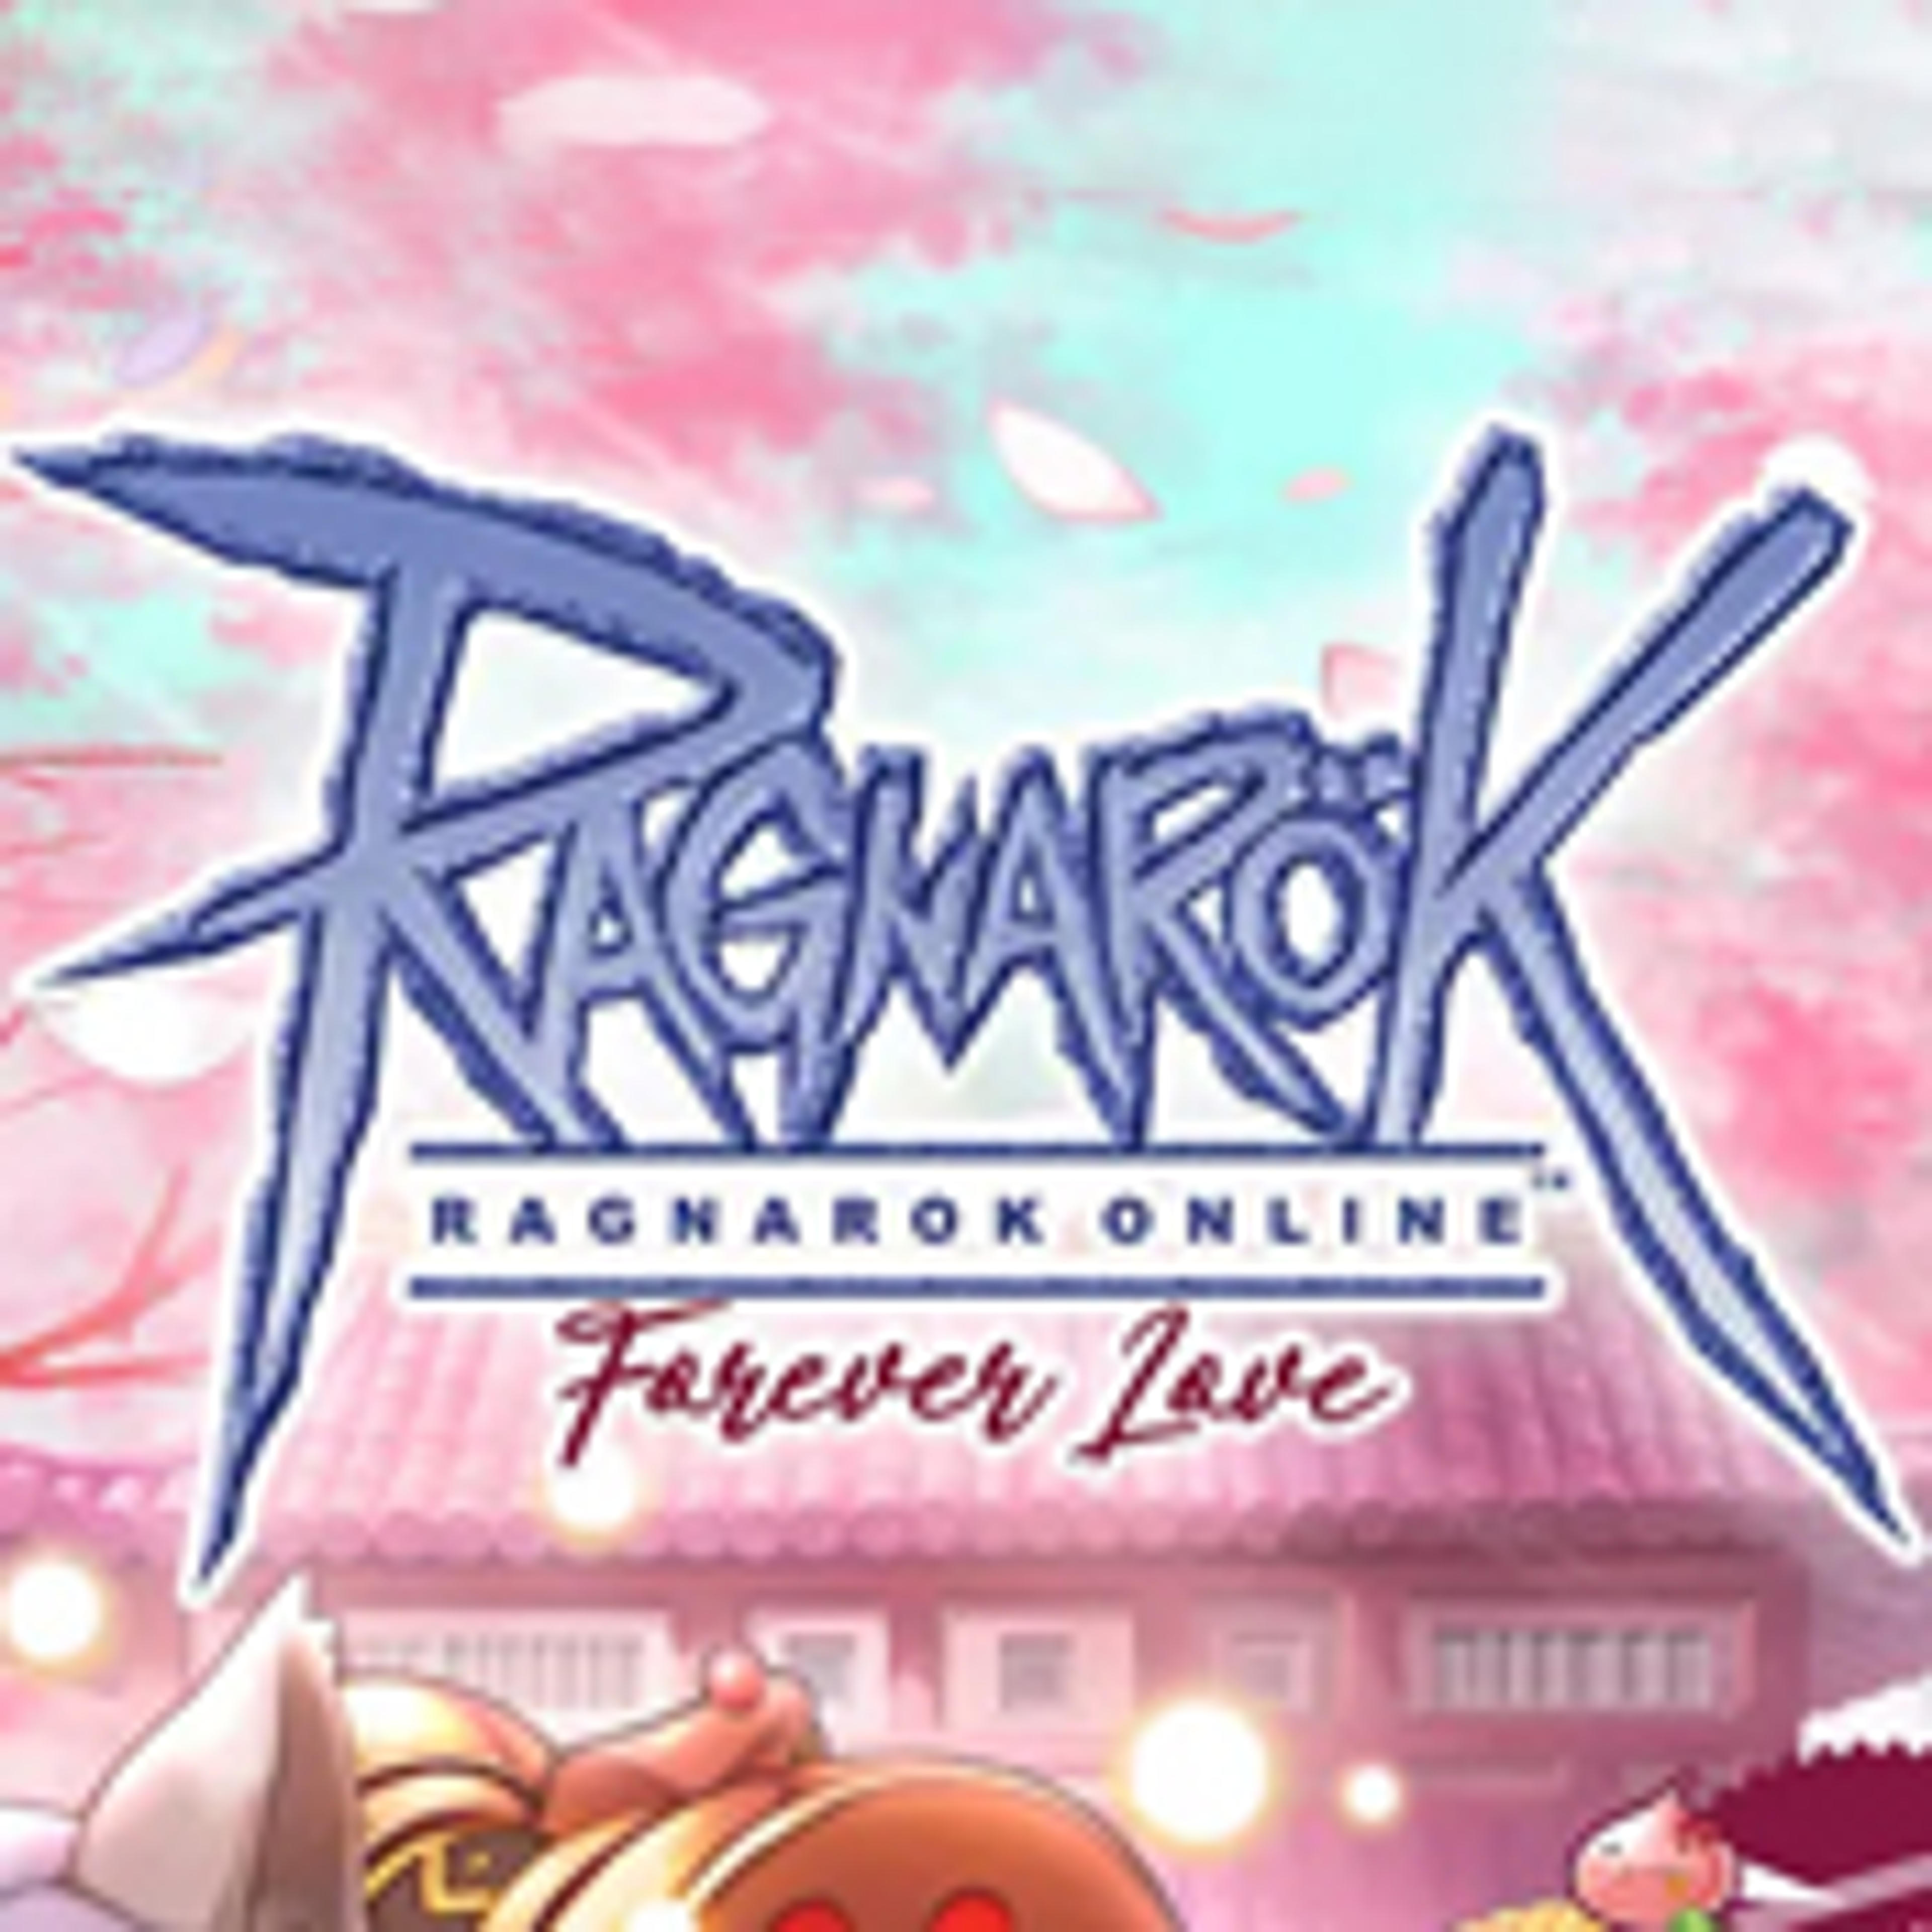 Ragnarok Forever Love